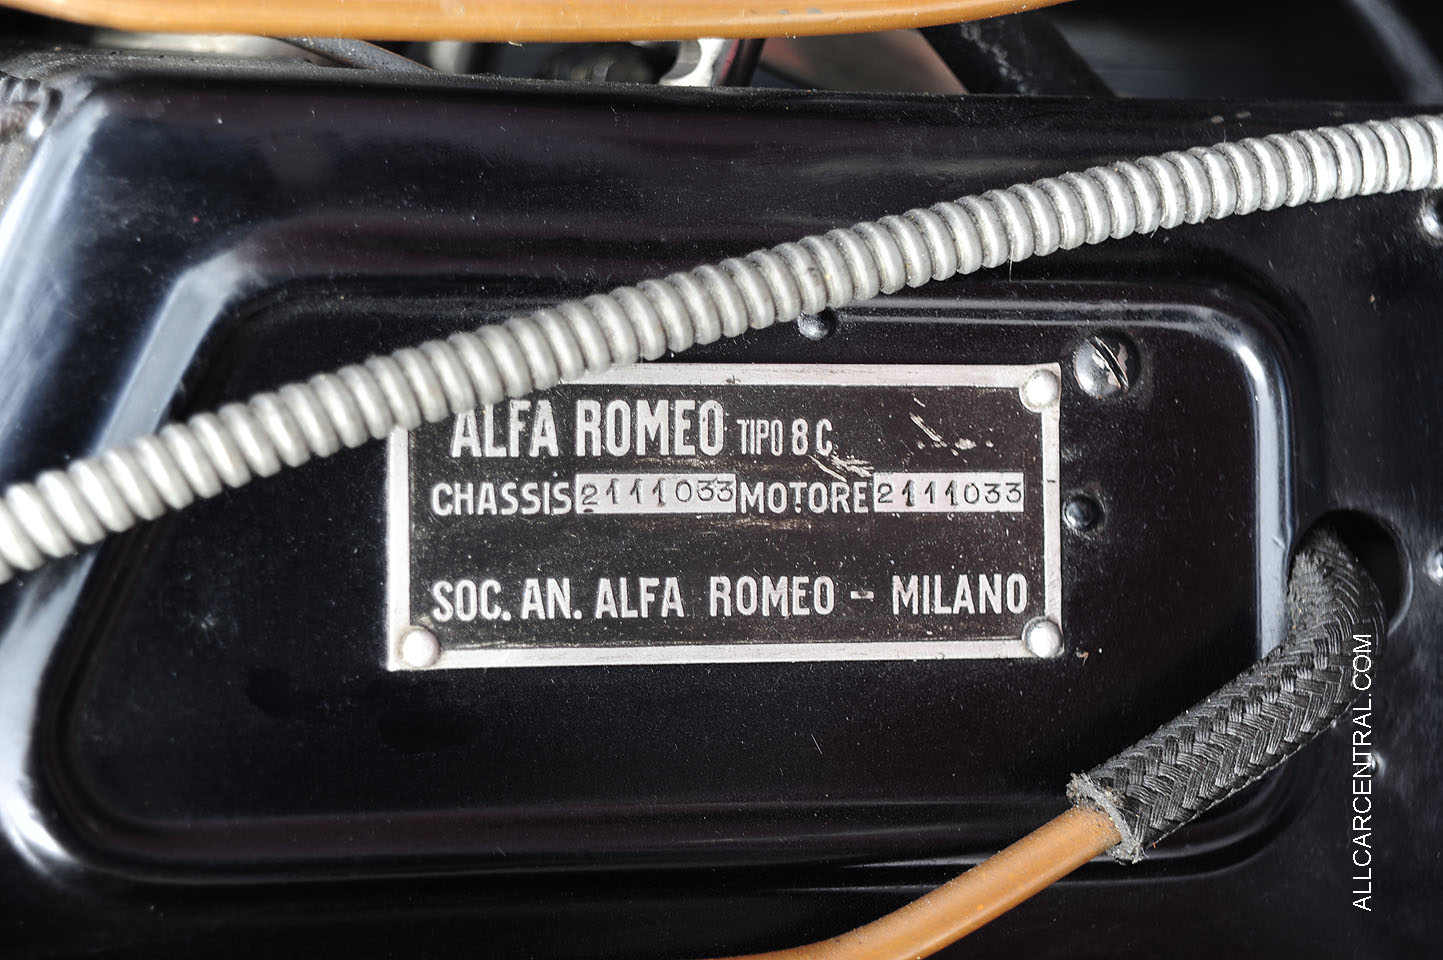 Alfa Romeo 8C 2300 sn-2111033 Mille Miglia Touring 1932 Front Axel No. 2101023  Corte Madera Centennial Vintage Car Show 2016